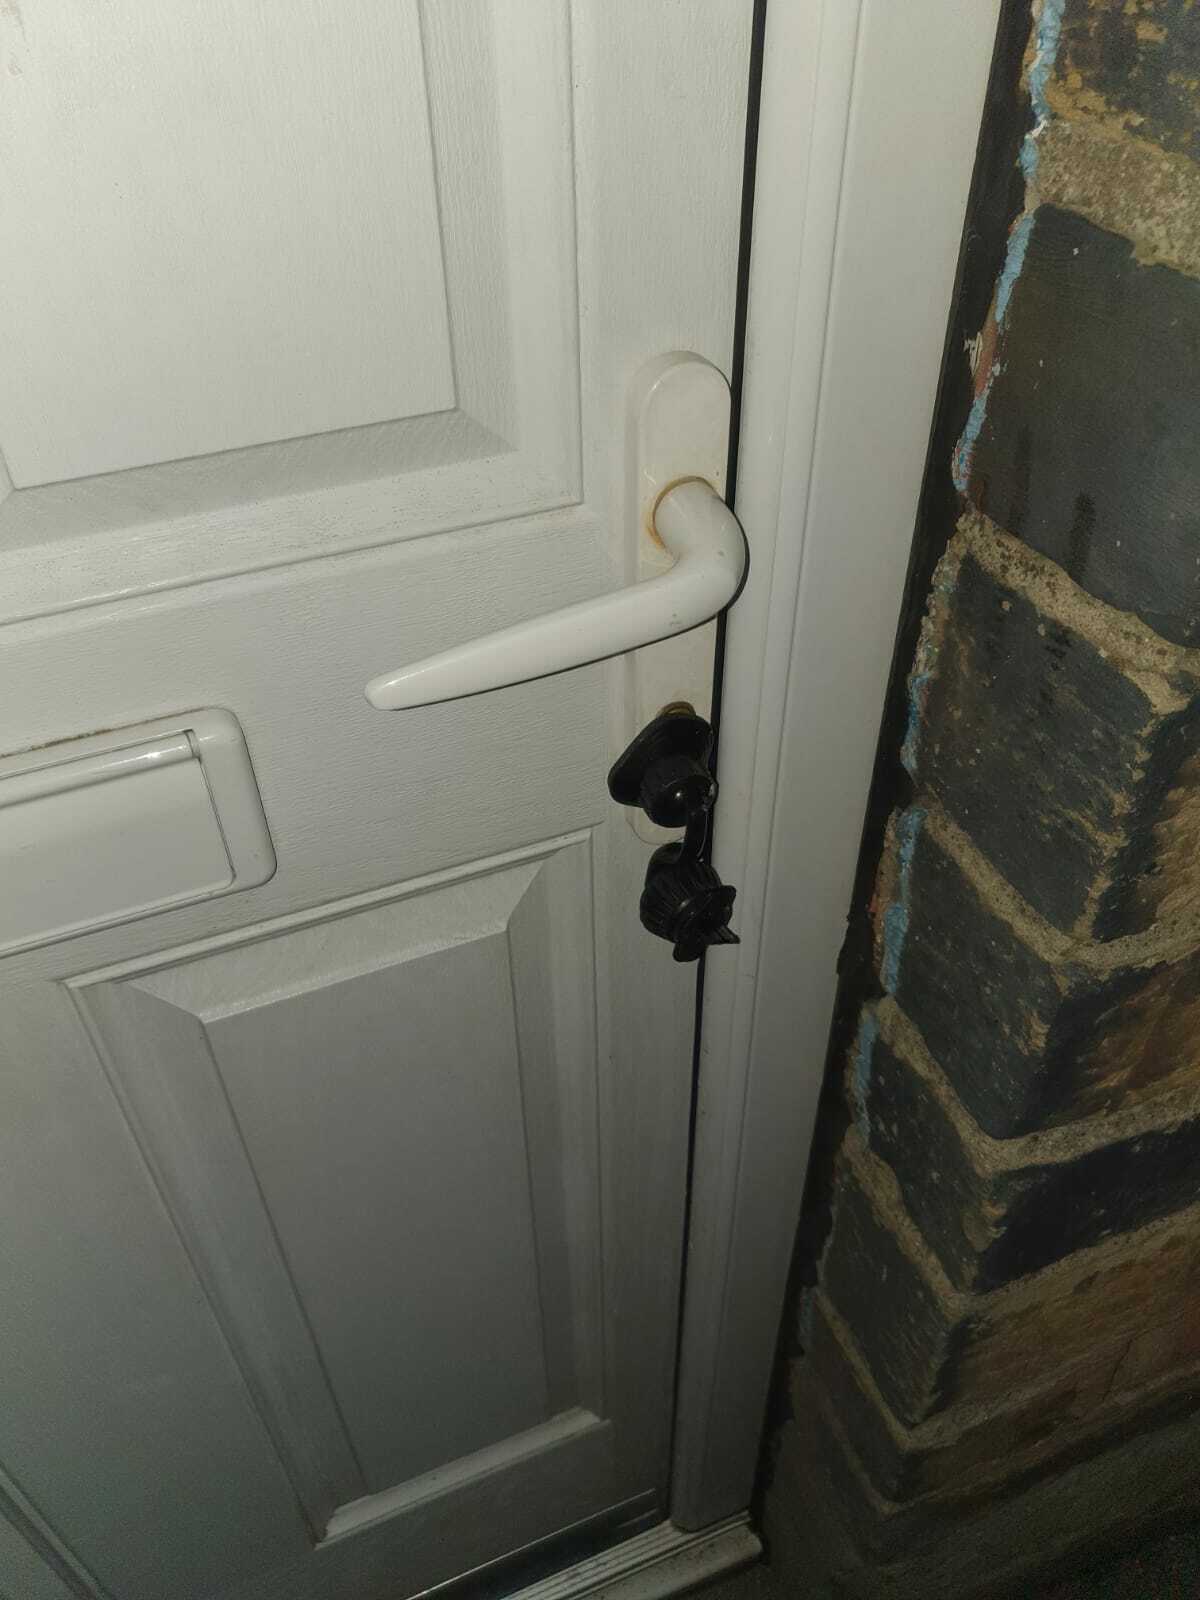 Je suis rentré chez moi et j’ai trouvé ce dispositif fixé à ma porte d’entrée, qui recouvre la serrure à clé. Qu’est-ce que c’est et que dois-je faire ? Est-ce qu’on peut l’ouvrir sans danger ? Qui l’a installé ?